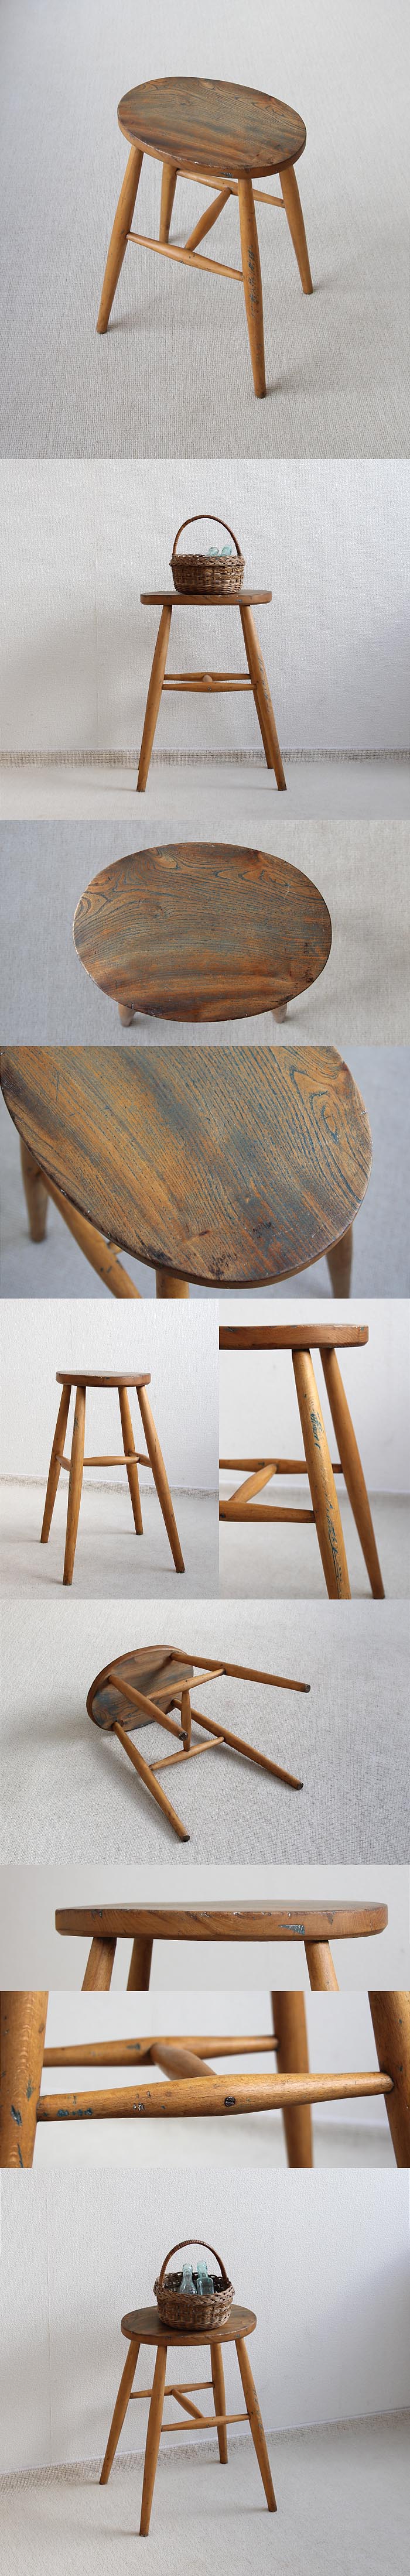 イギリス アンティーク スツール 木製椅子 カントリー 無垢材 英国 家具「花台にも」V-526